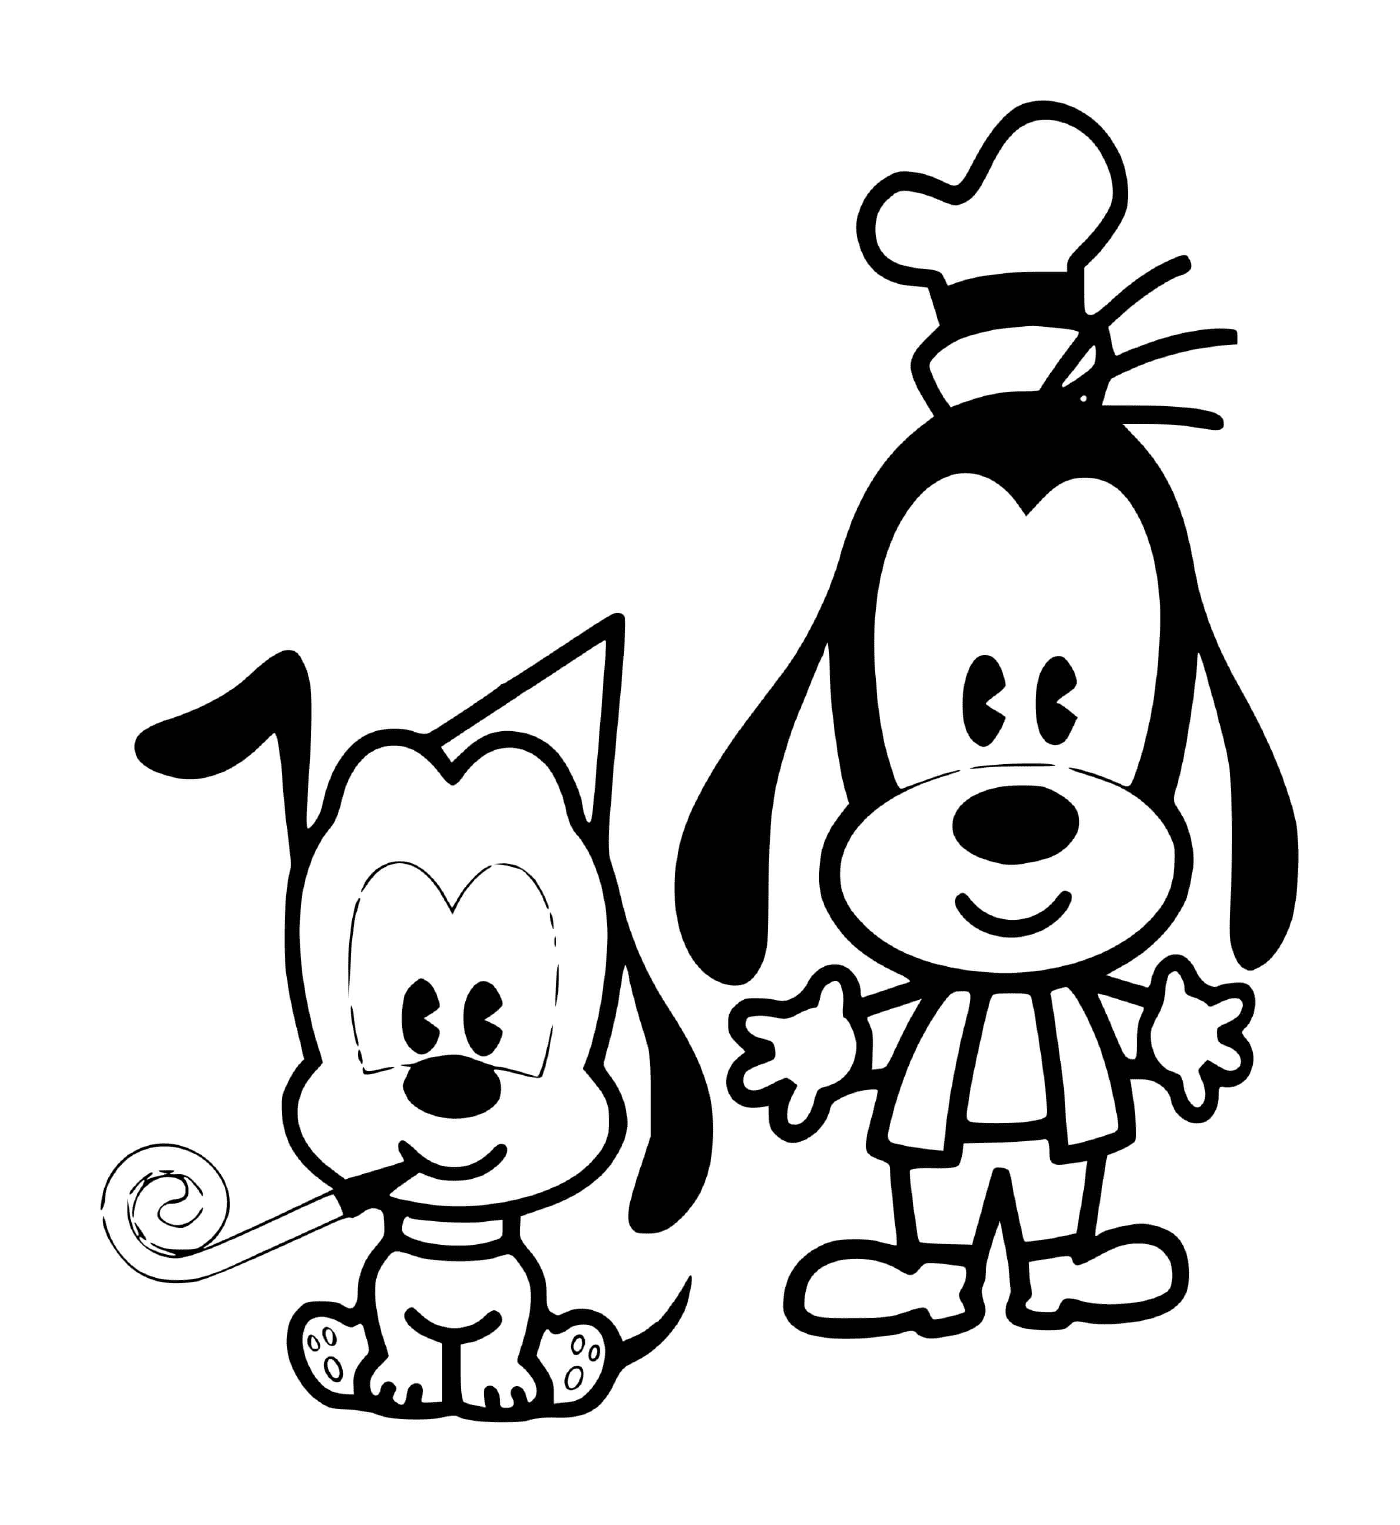  Dingo und Pluto Baby zum Geburtstag 